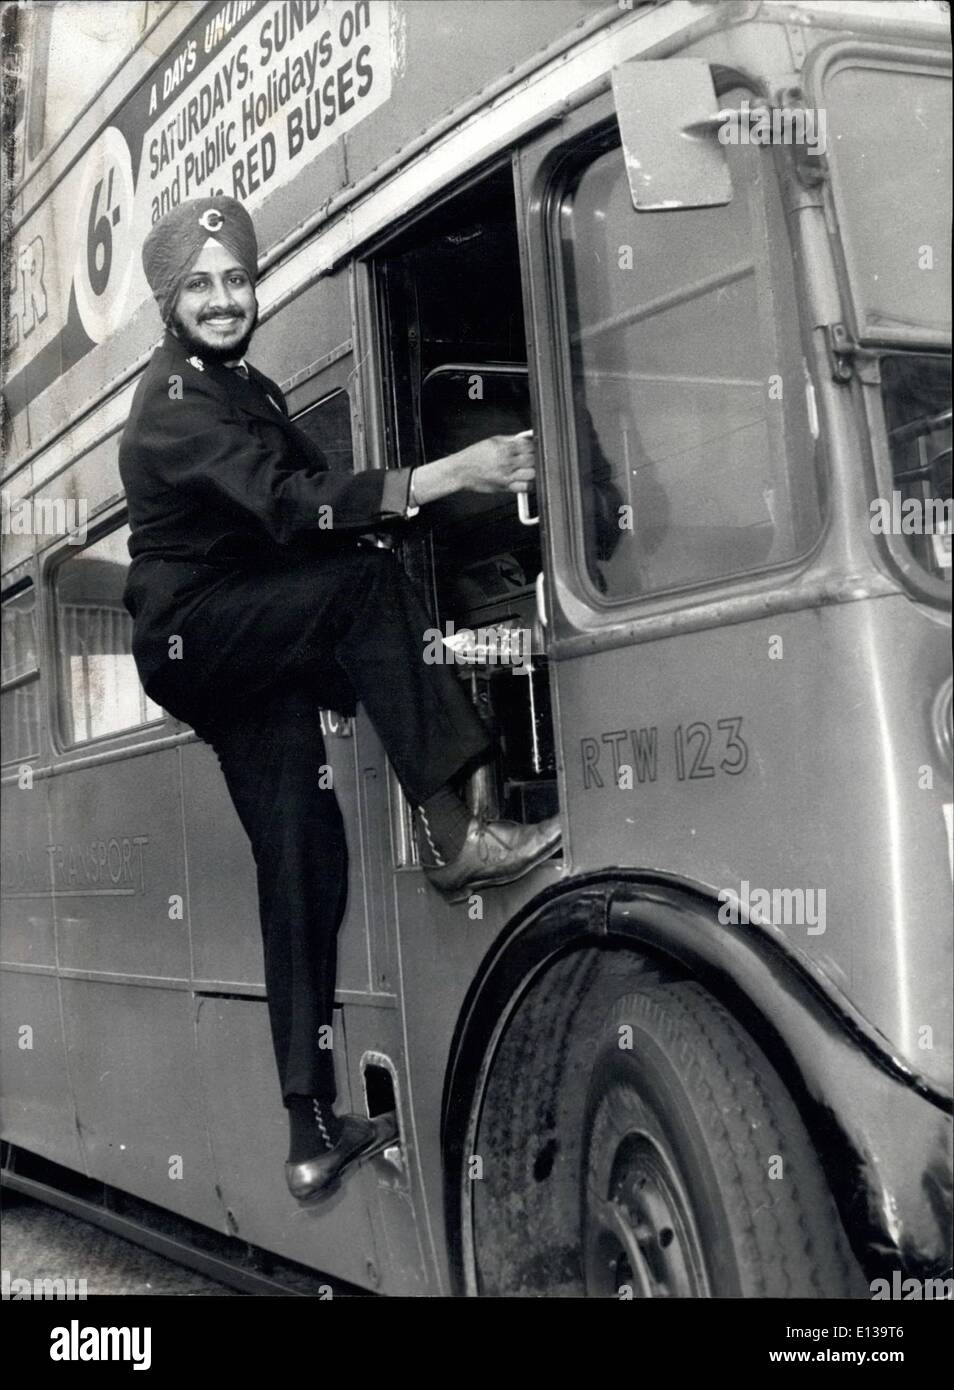 29. Februar 2012 - wird Tarsem Singh Sandhu, die Sikh Busfahrer, der den Wolvershamton Transport Corporation suspendiert wurde, weil er sich weigerte, seinen Turban und Bart, vergossen hat einen Job als Busfahrer von der London Transport gegeben, er der erste Sikh mit Turban und Bart auf Londoner Bussen eingestellt werden. Fotos zeigt Tarsem Singh Sandhu über an Bord ein London-Bus in Chiswick Depot heute. Stockfoto